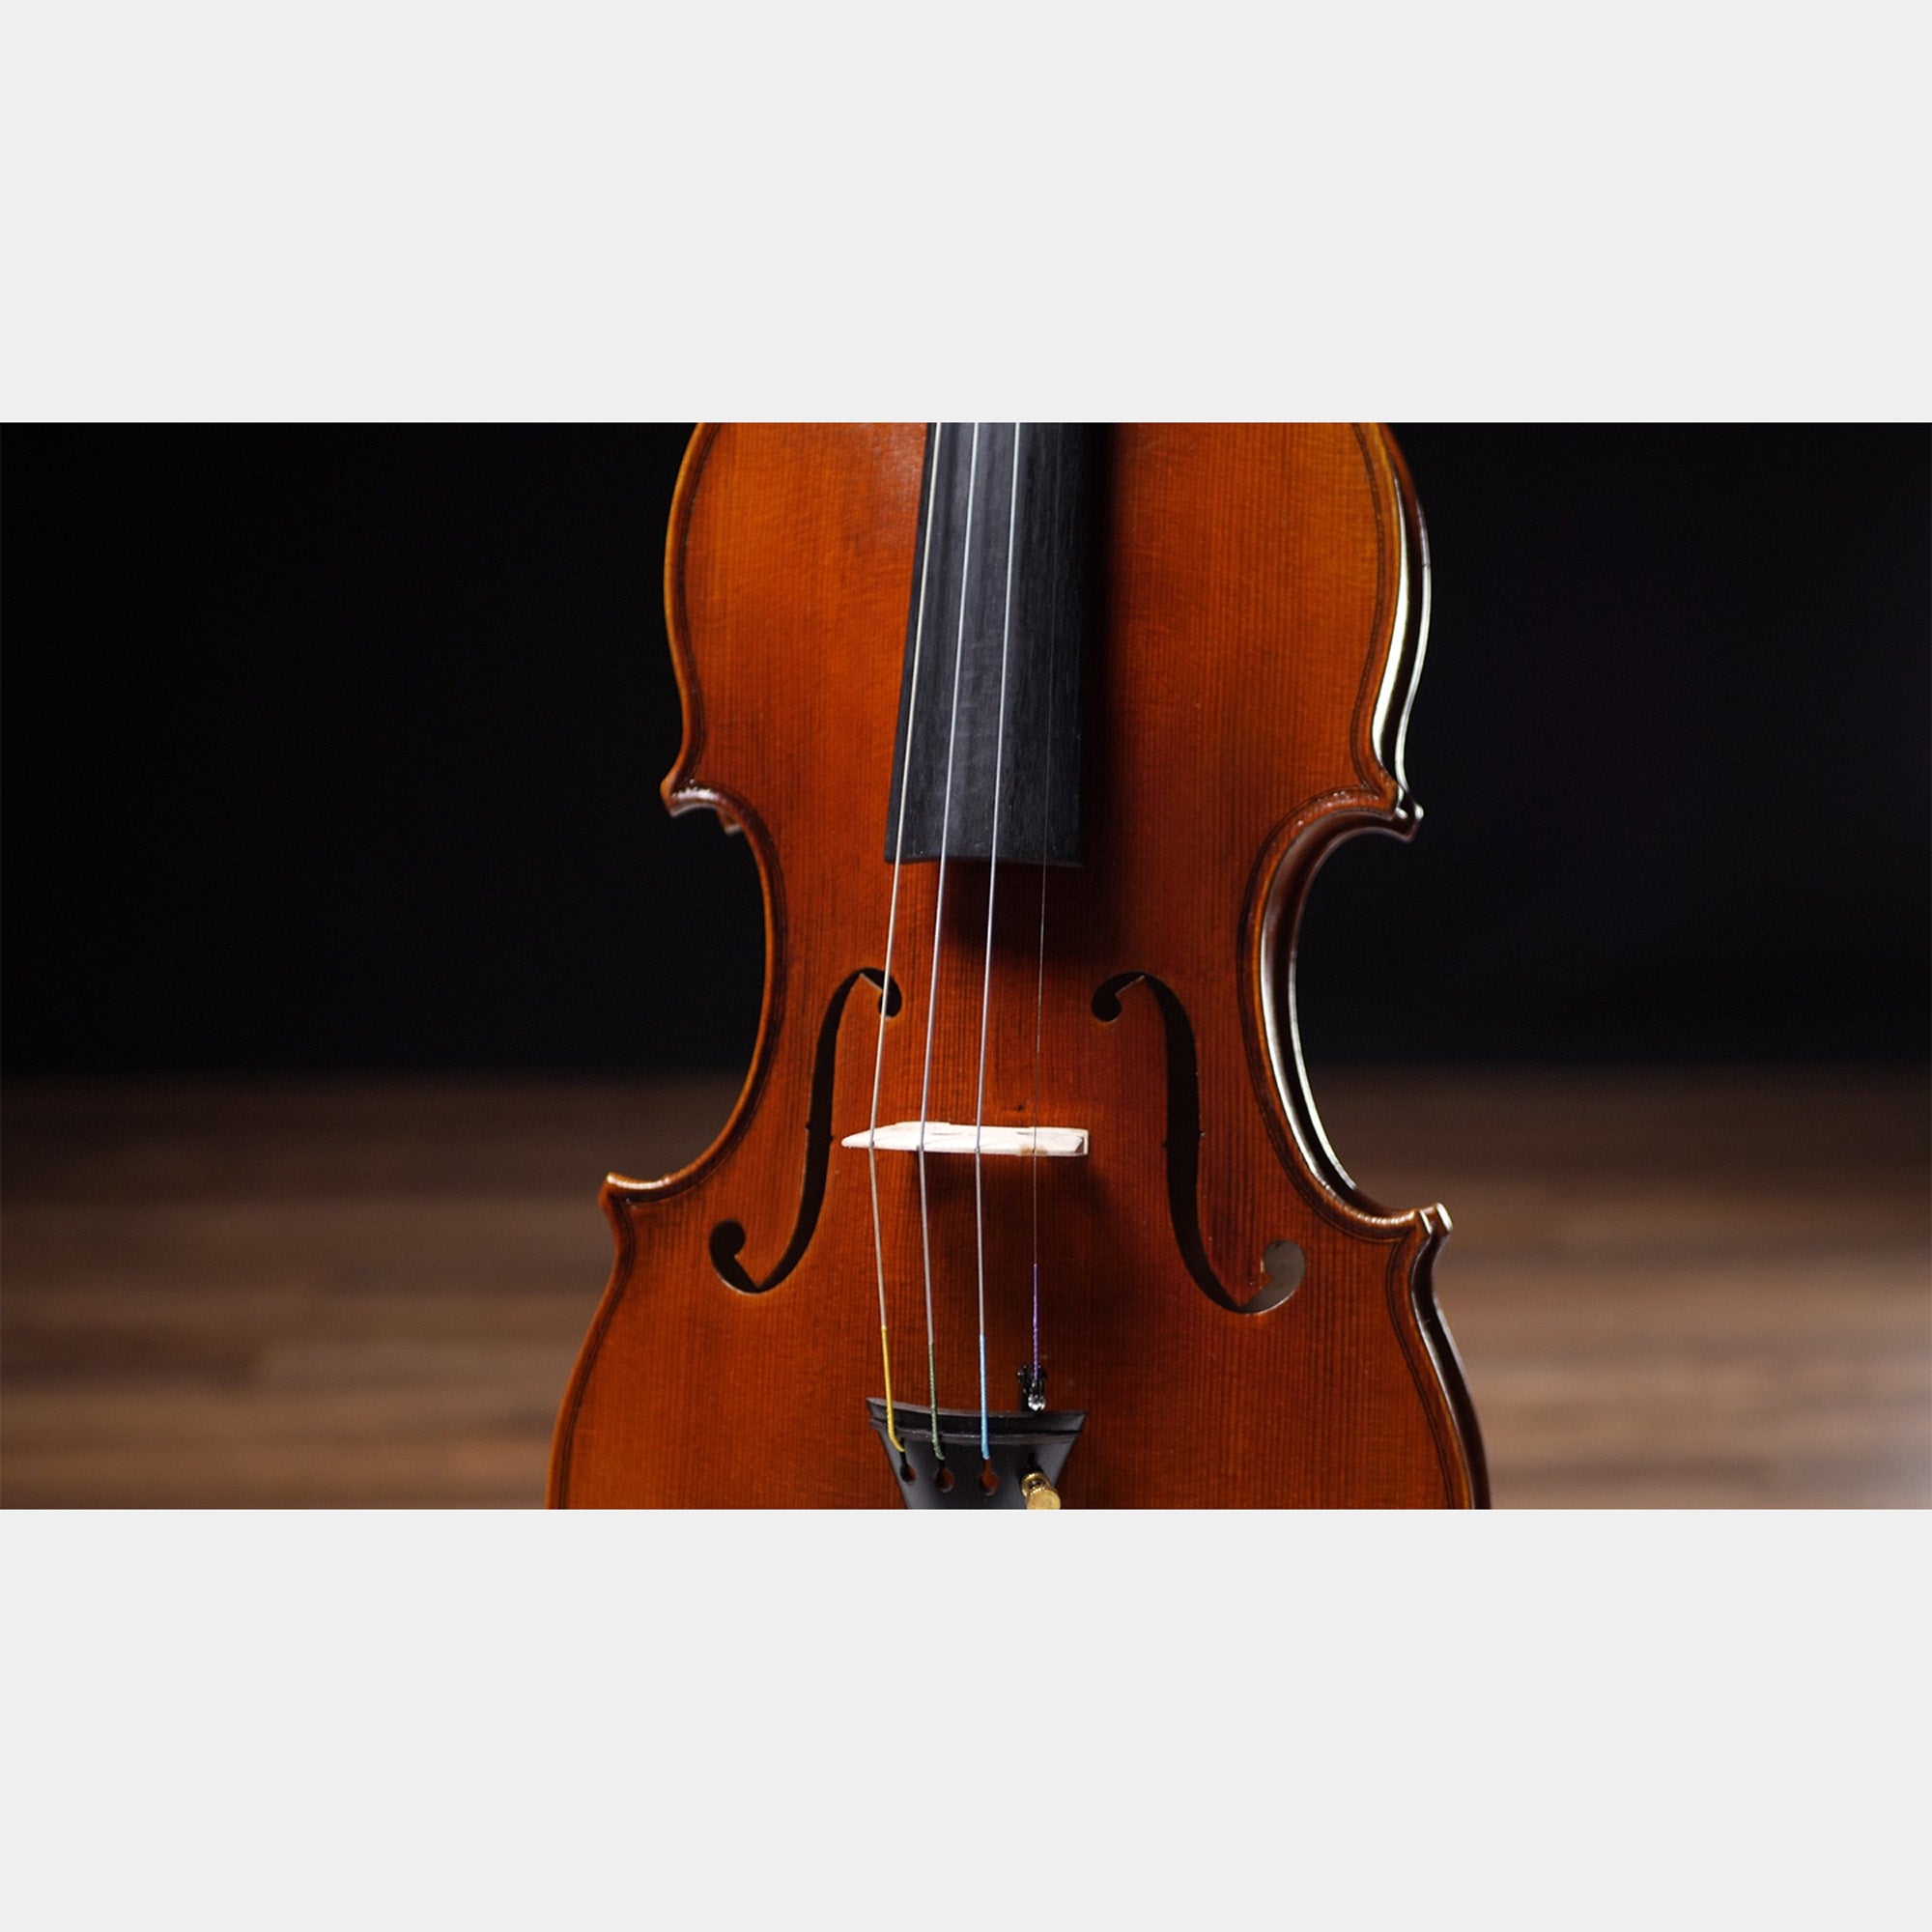 Barnabetti Violin